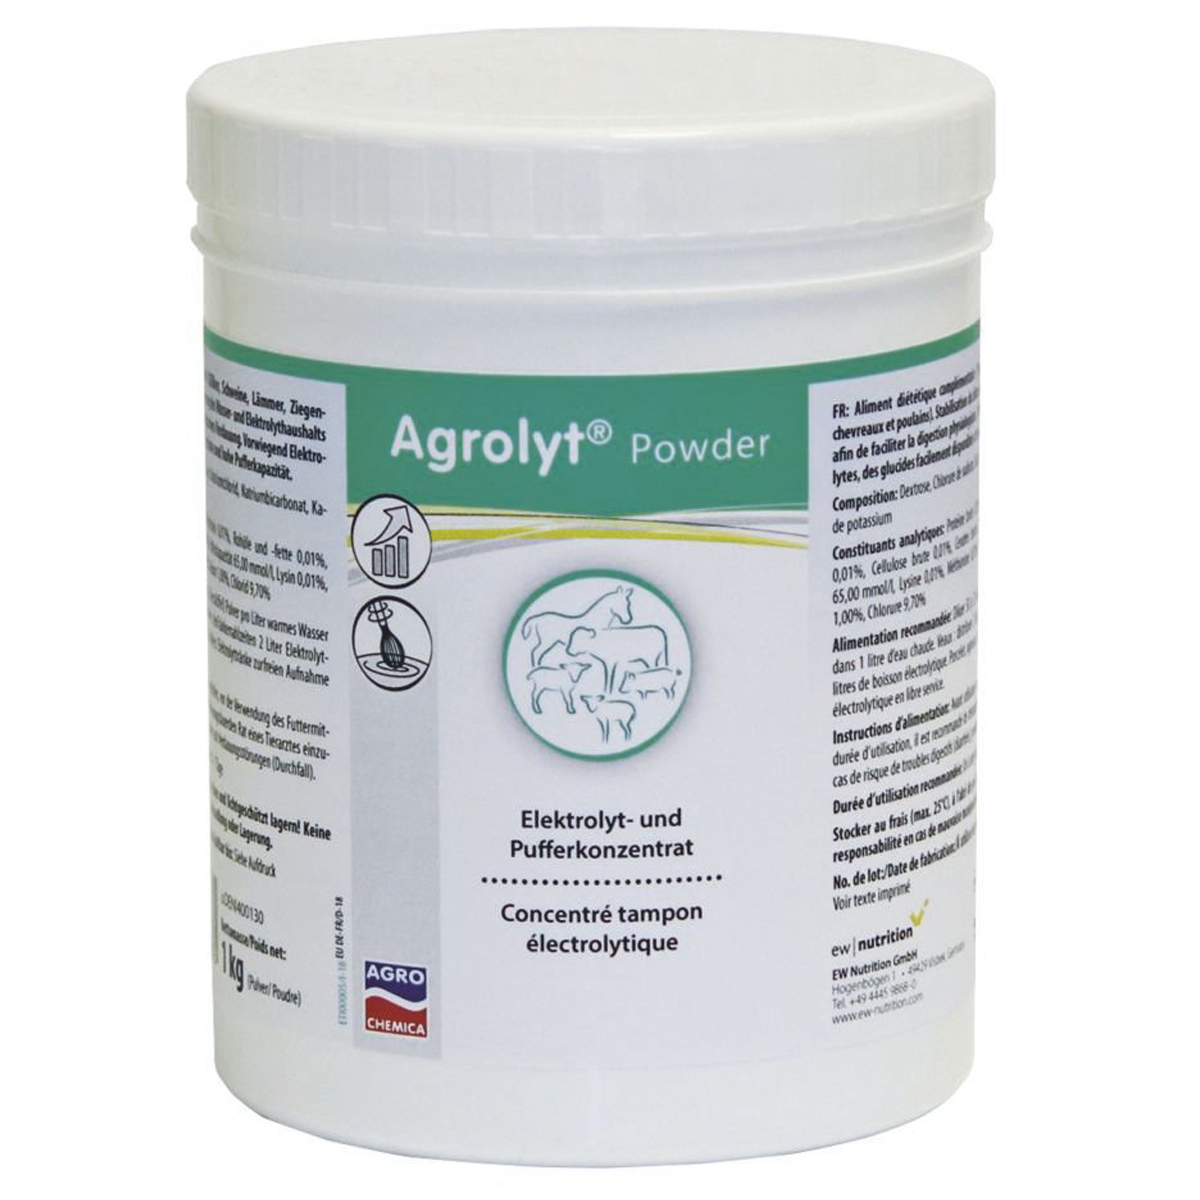 Agrolyt Powder concentrato elettrolitico per vitelli suini agnelli e puledri